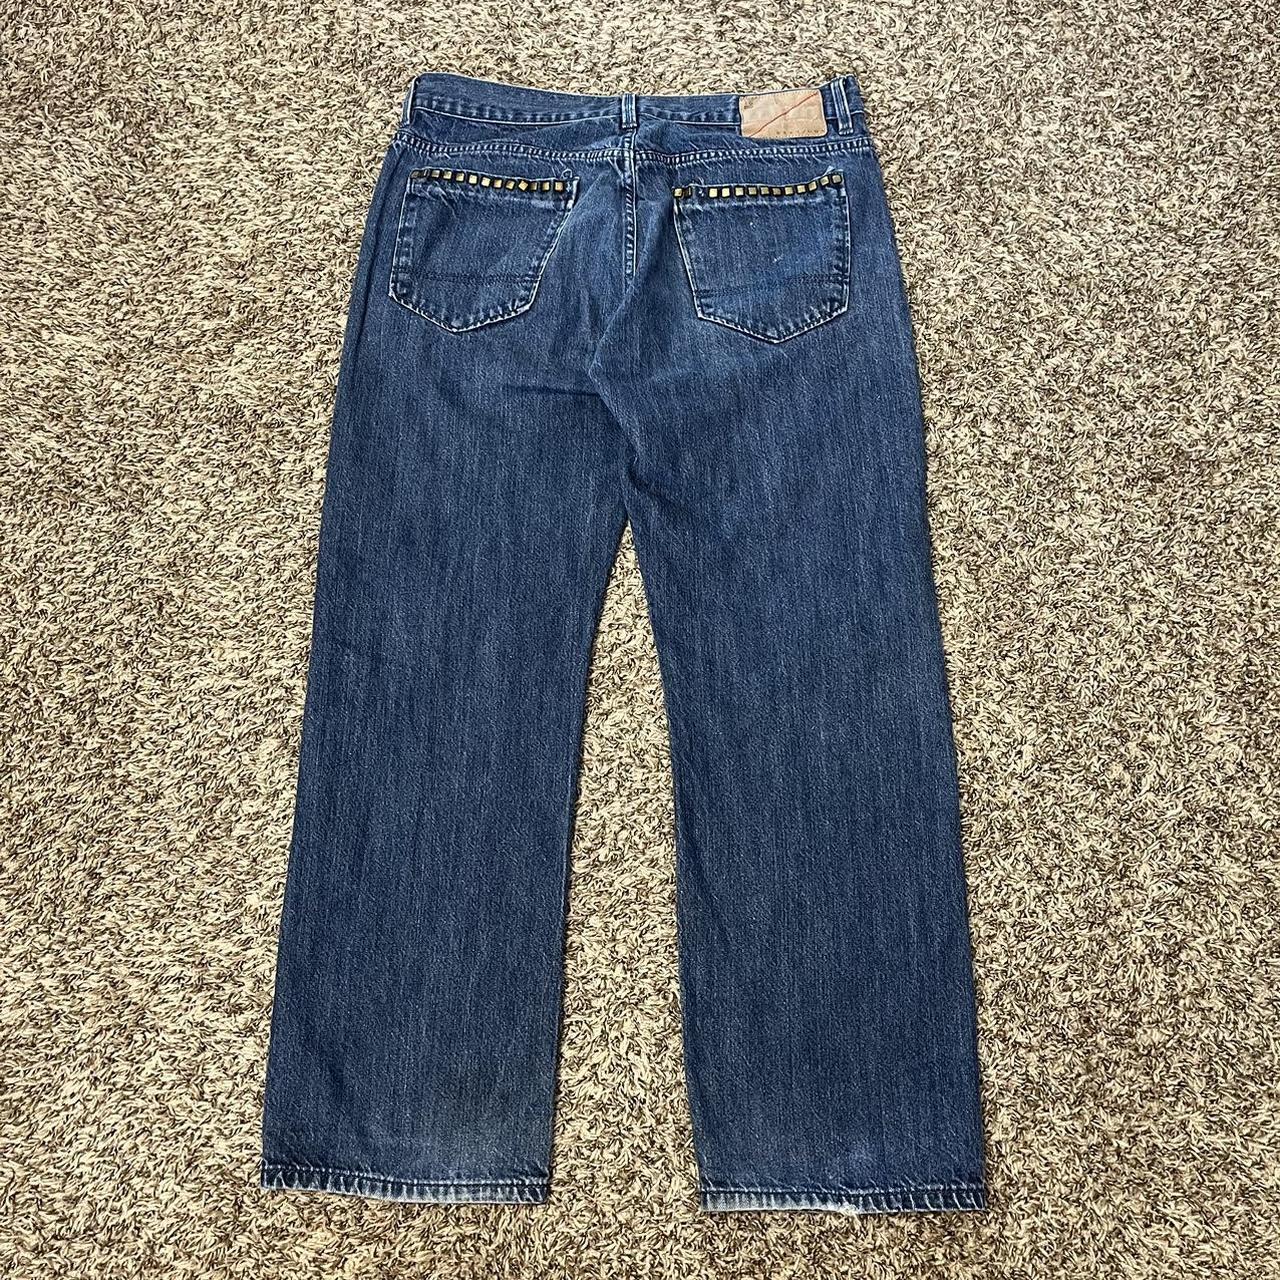 Vintage Sean John jeans Studded back pockets Size... - Depop